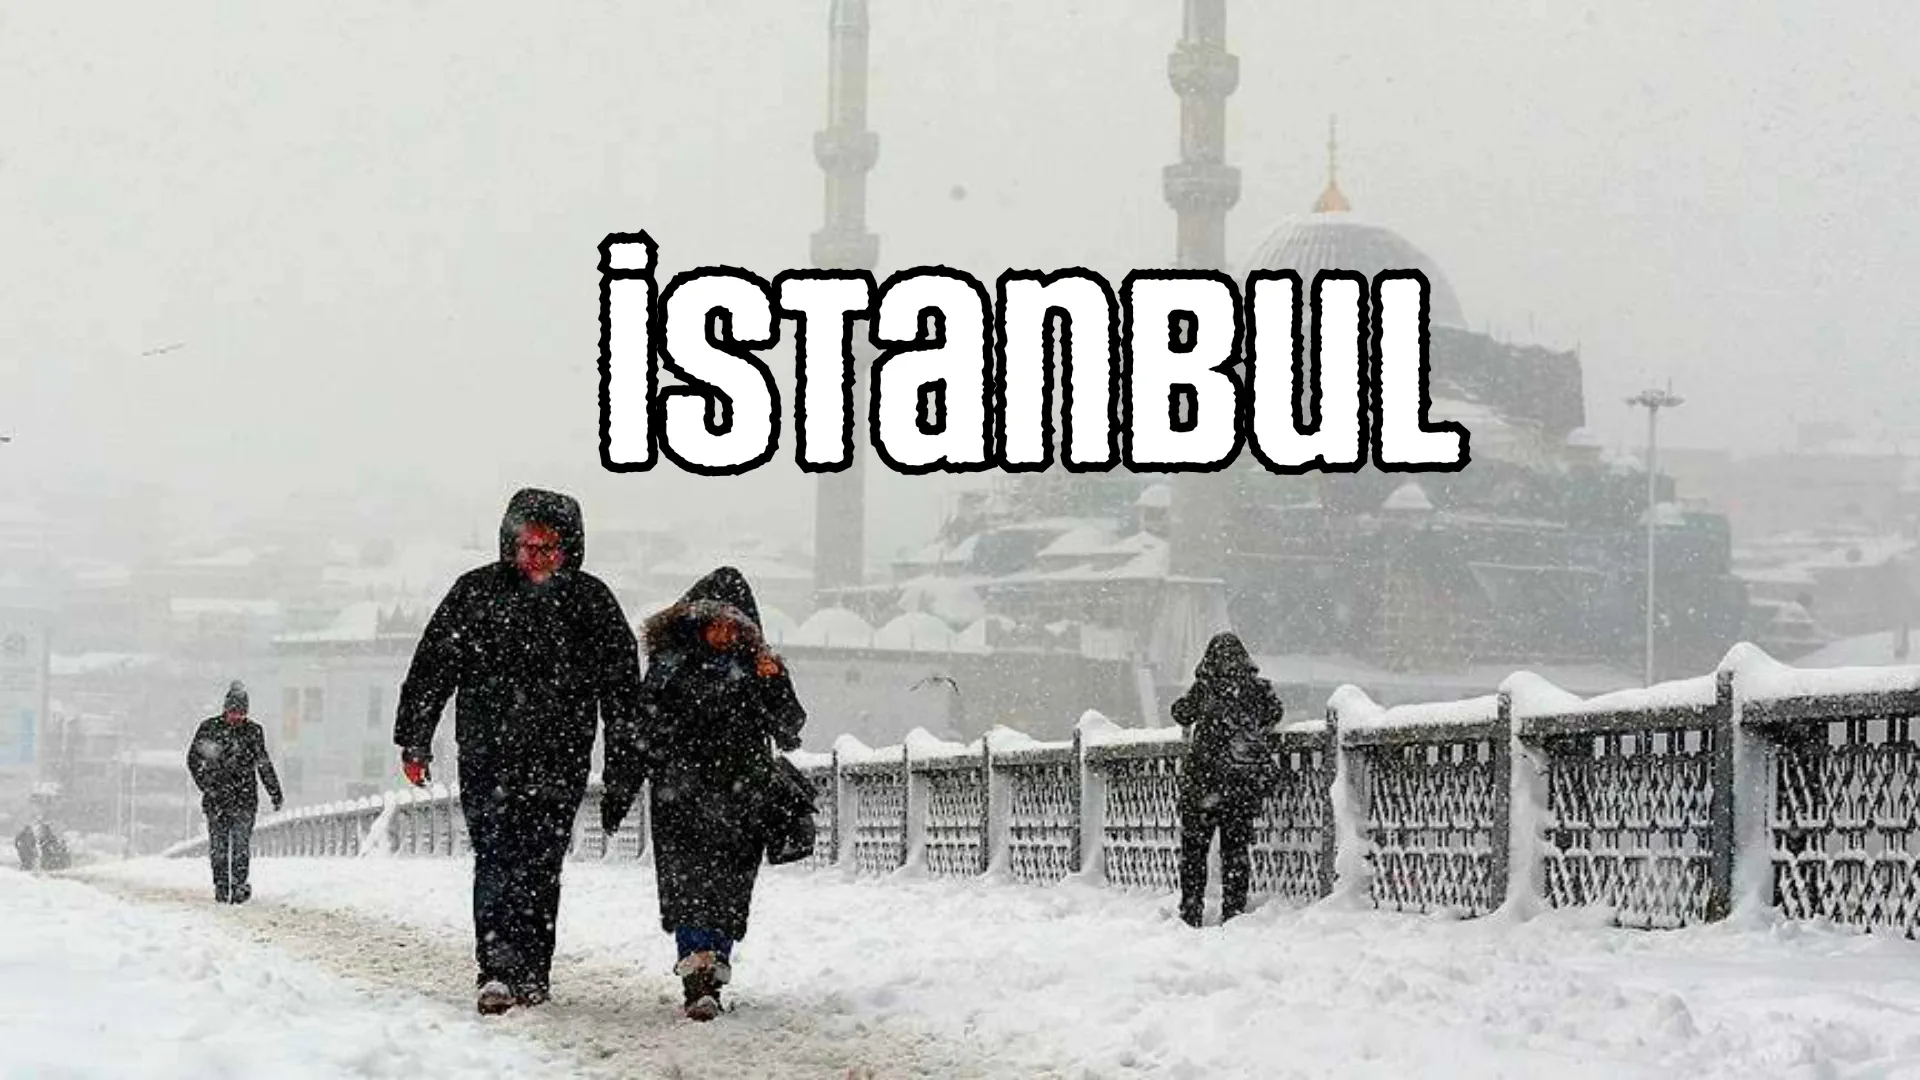 Непогода: Шторм в Крыму, наводнение в Турции, снегопады в Румынии, Болгарии и Молдове.